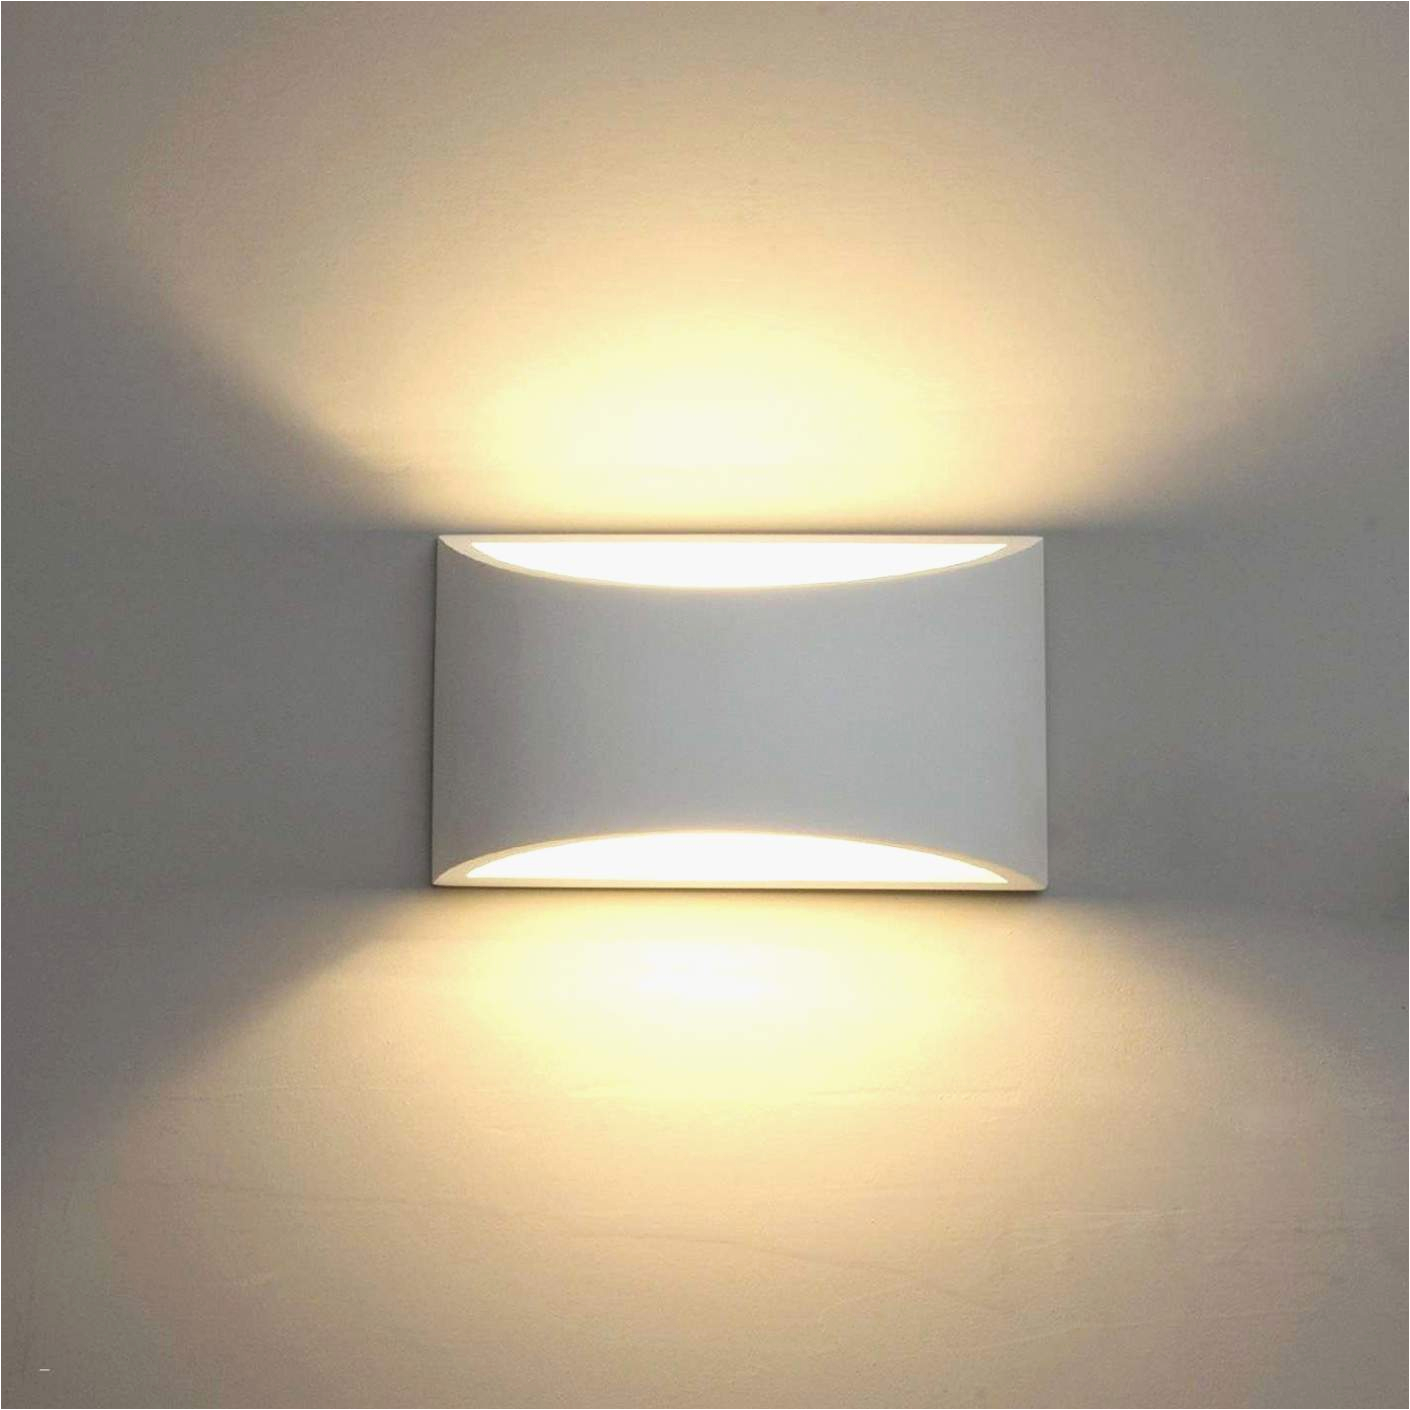 Schlafzimmer Lampe Modern Deckenlampe Wohnzimmer Modern Inspirierend Deckenlampe